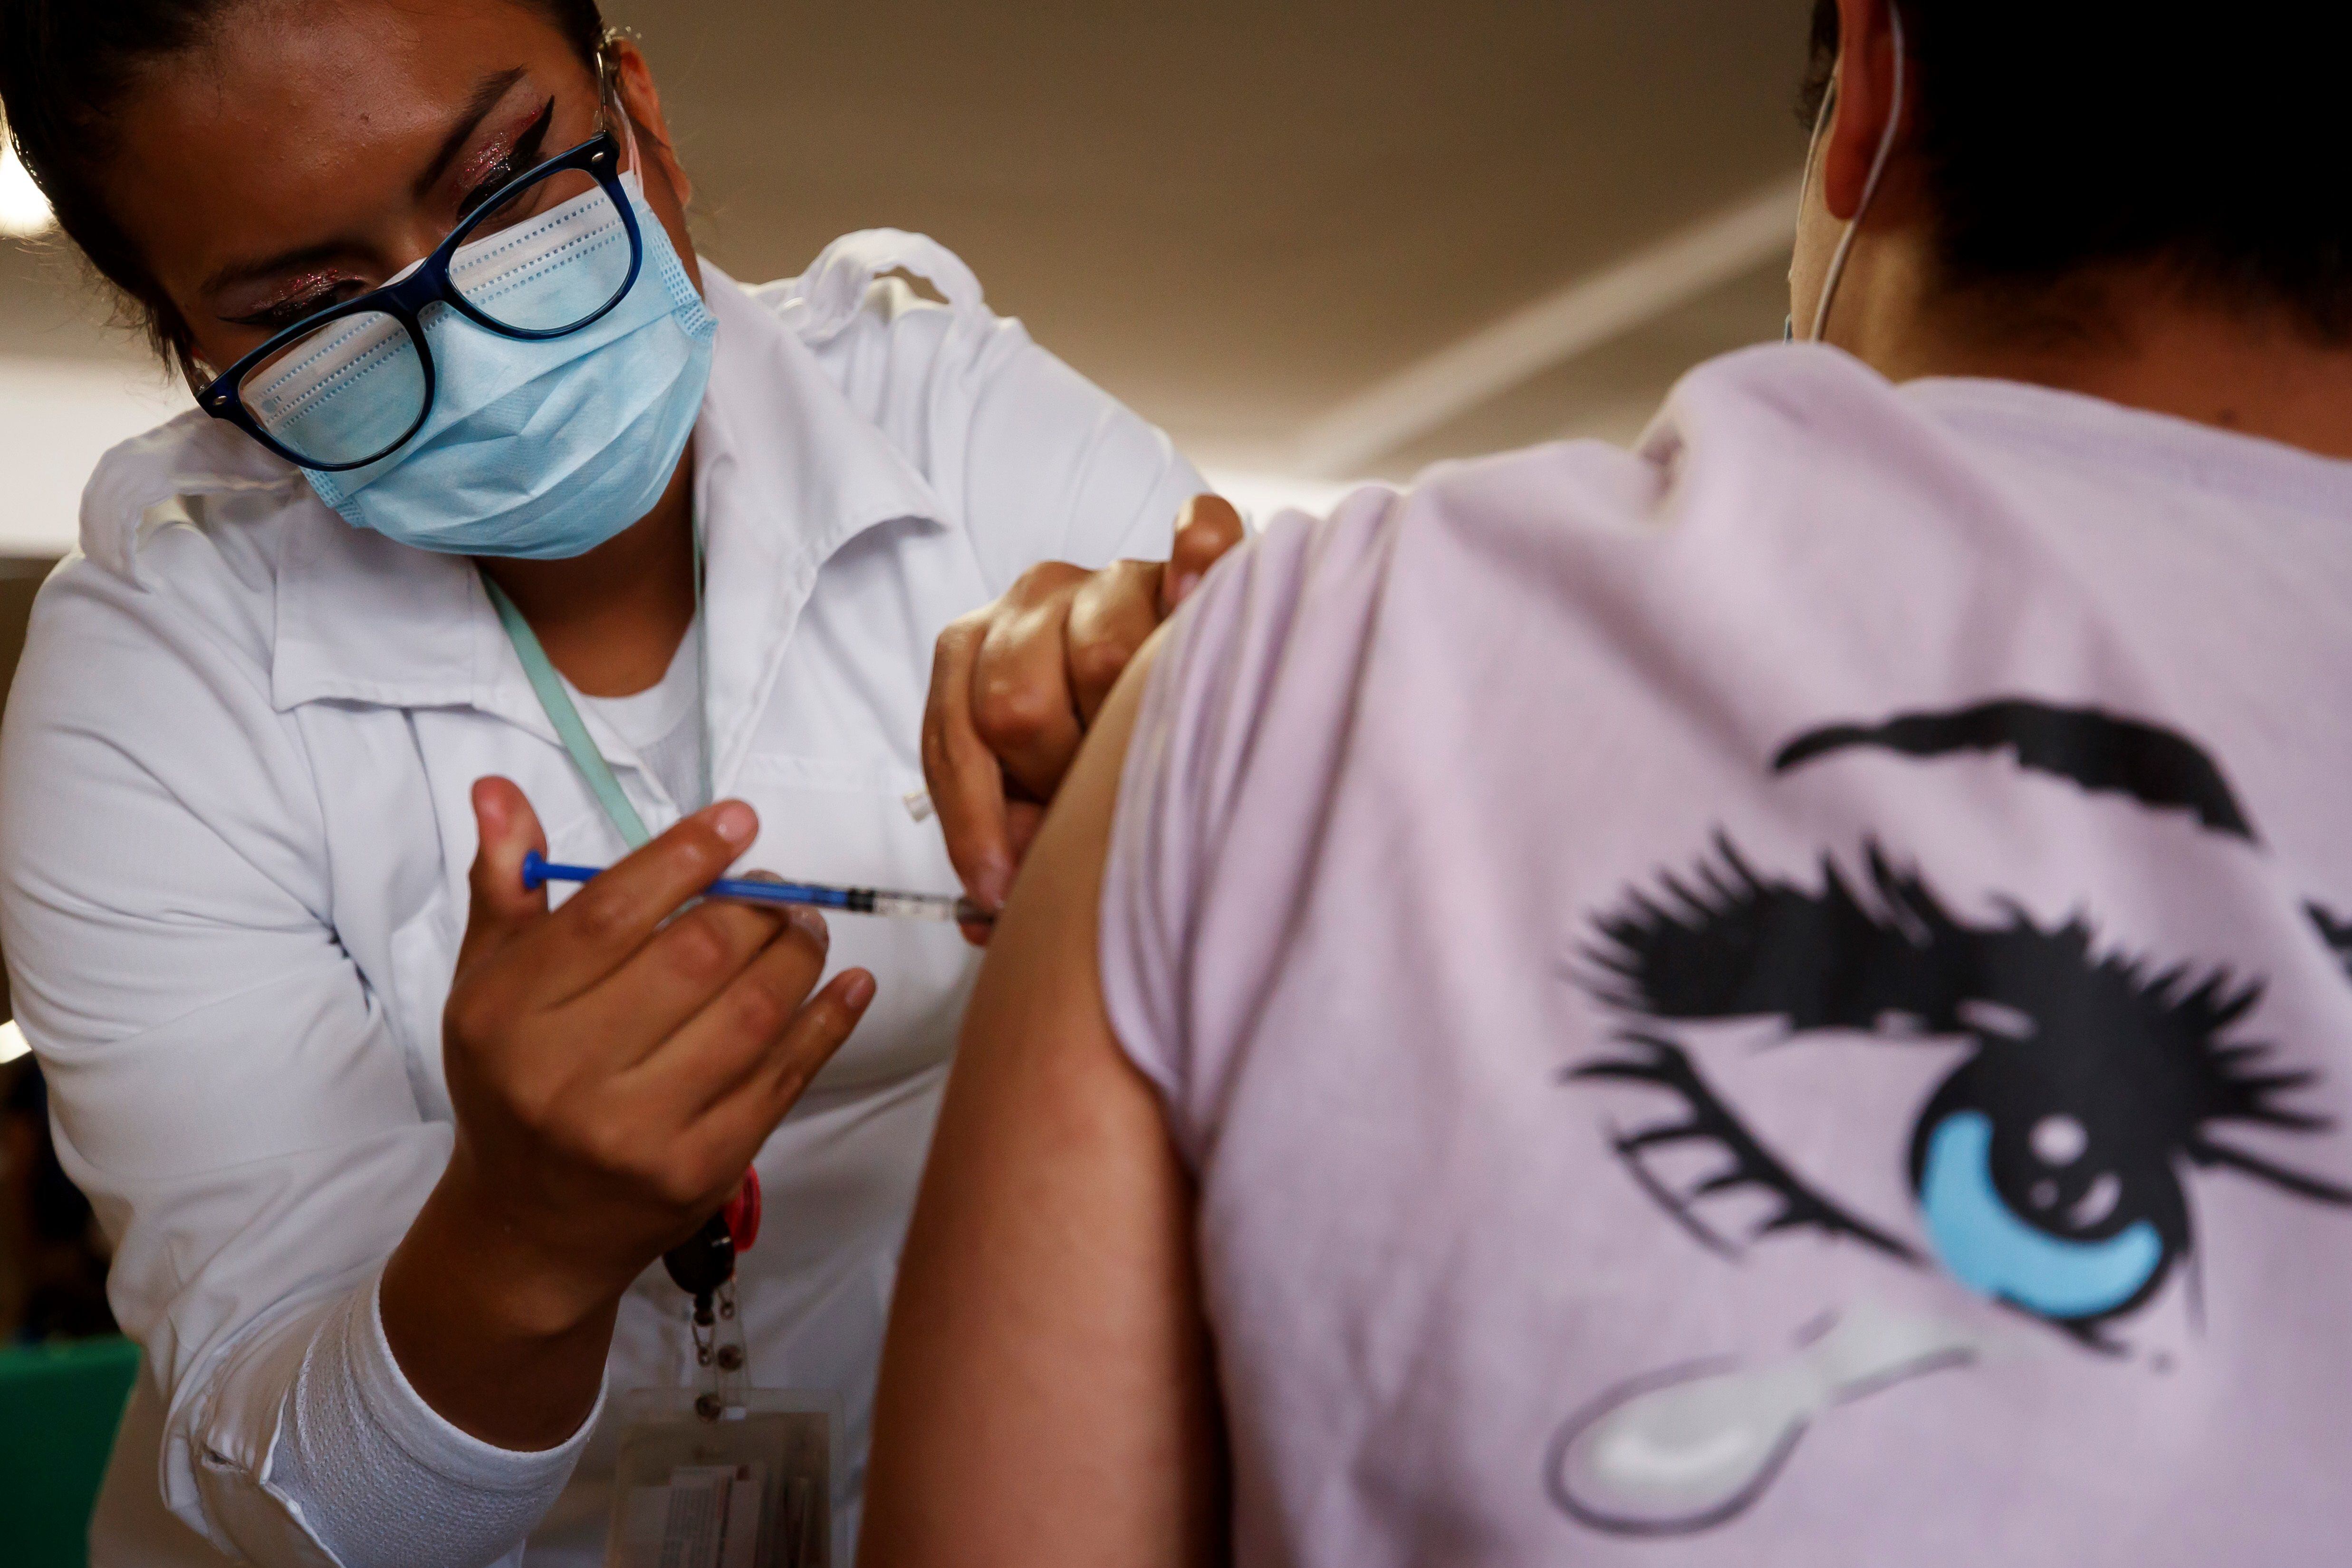 Una persona recibe una vacuna contra la covid-19, en Ciudad de México (México), en una fotografía de archivo. EFE/José Méndez
